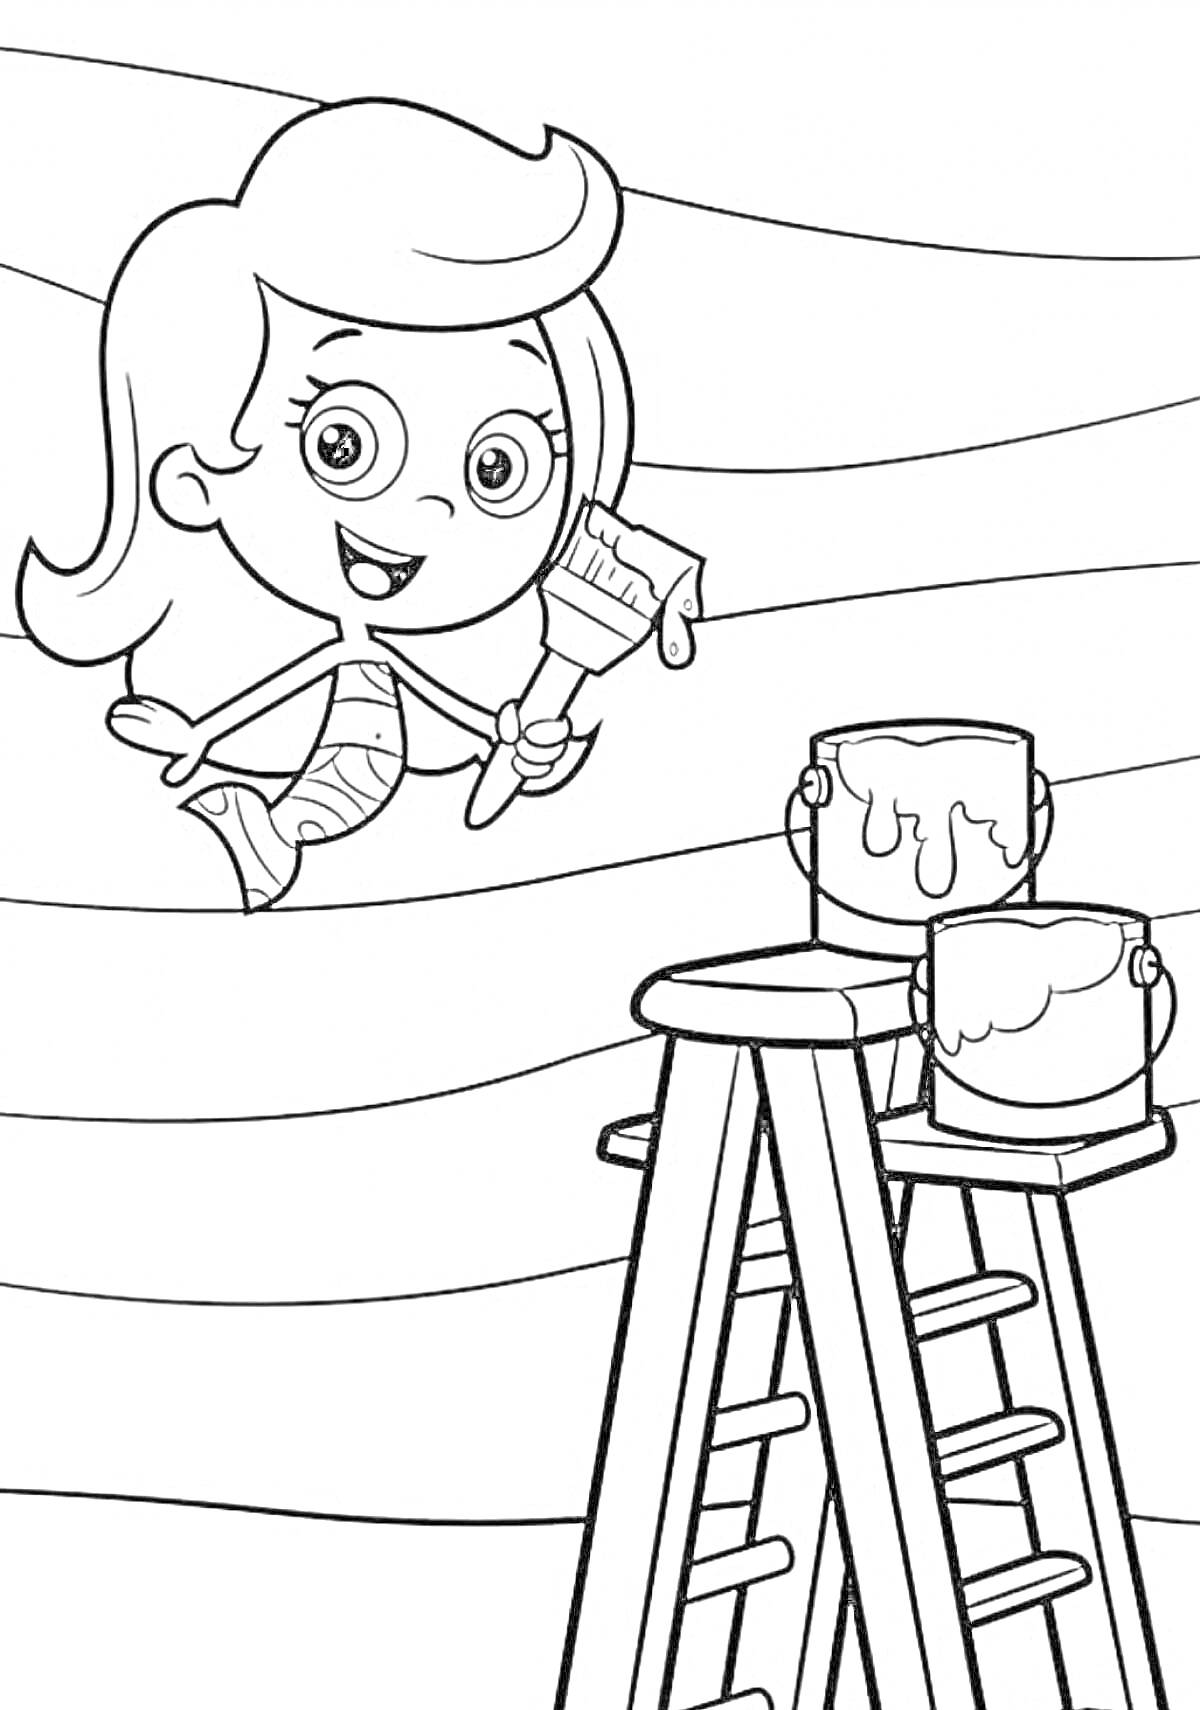 Раскраска Мальчик-гуппи с кисточкой, банками краски и лестницей